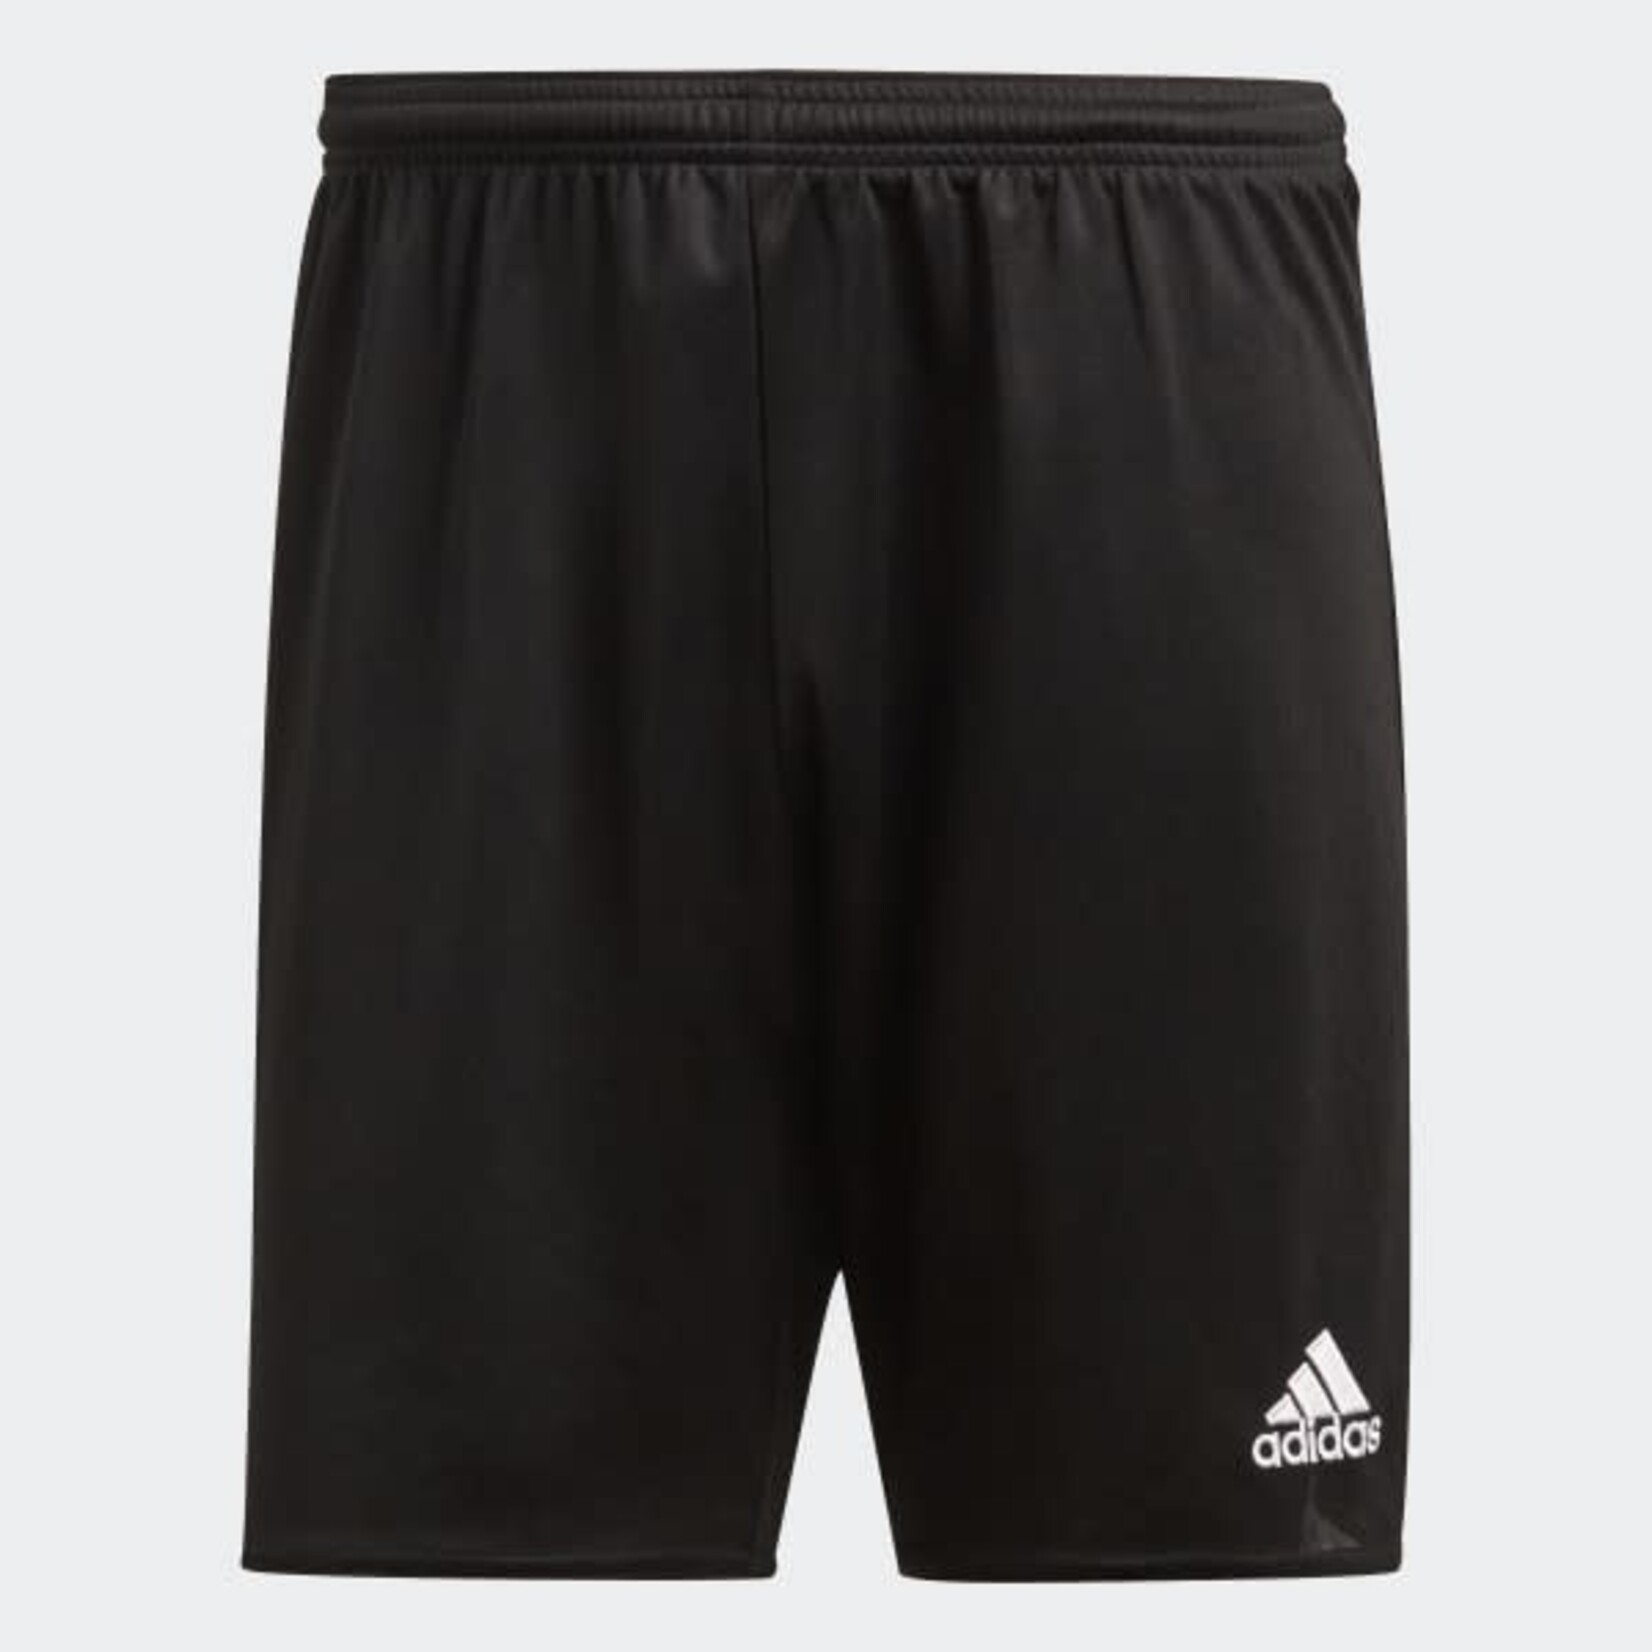 Adidas Adidas Shorts, Parma 16 Sho, Mens